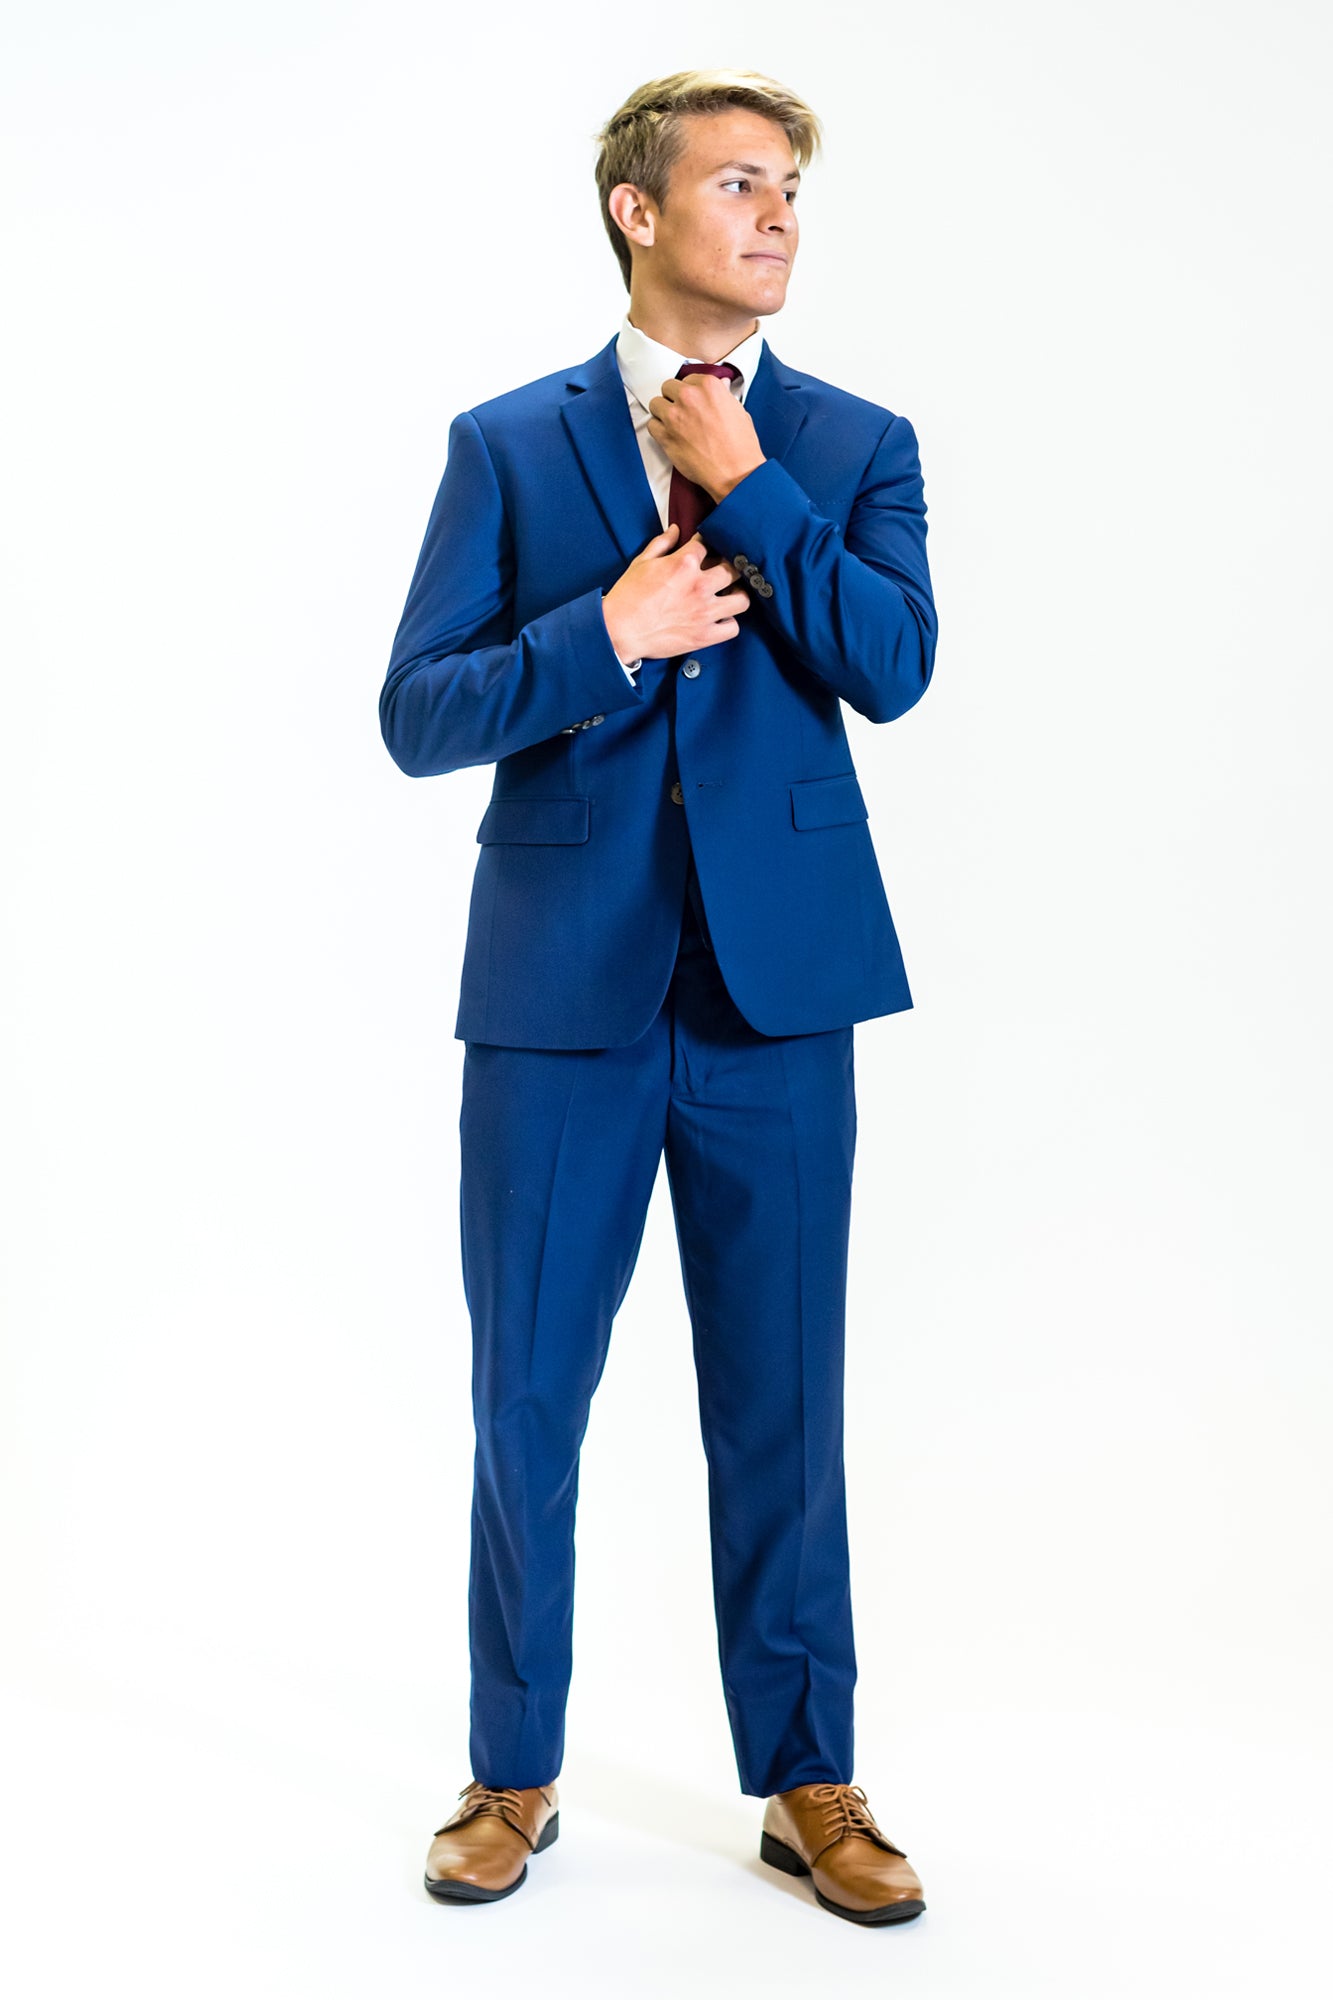 high school student boy wearing cobalt blue suit standing frontward adjusting red tie